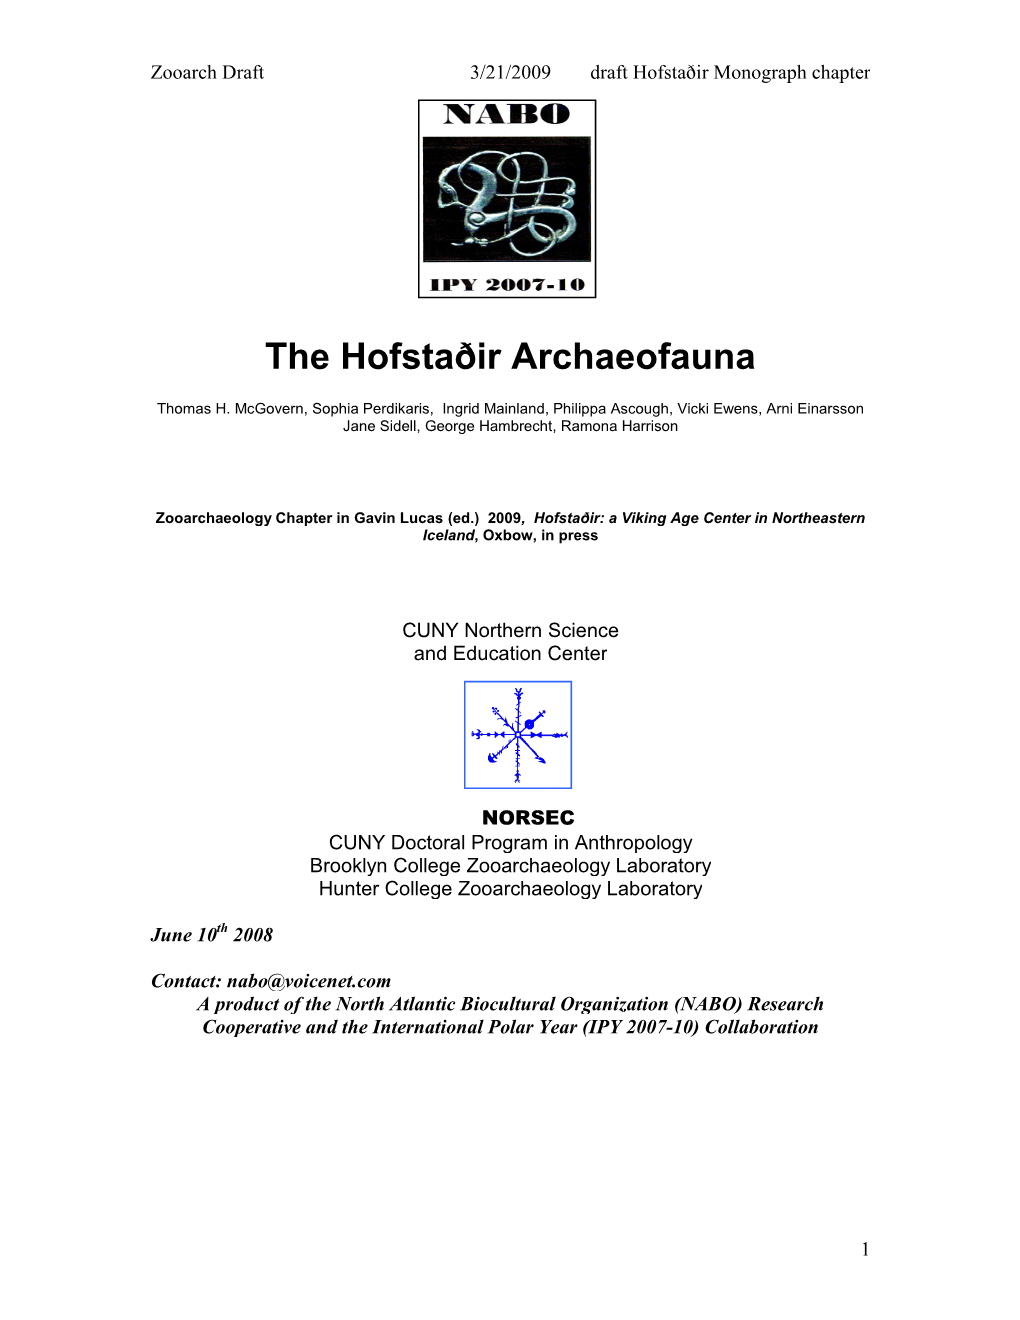 The Hofstaðir Archaeofauna